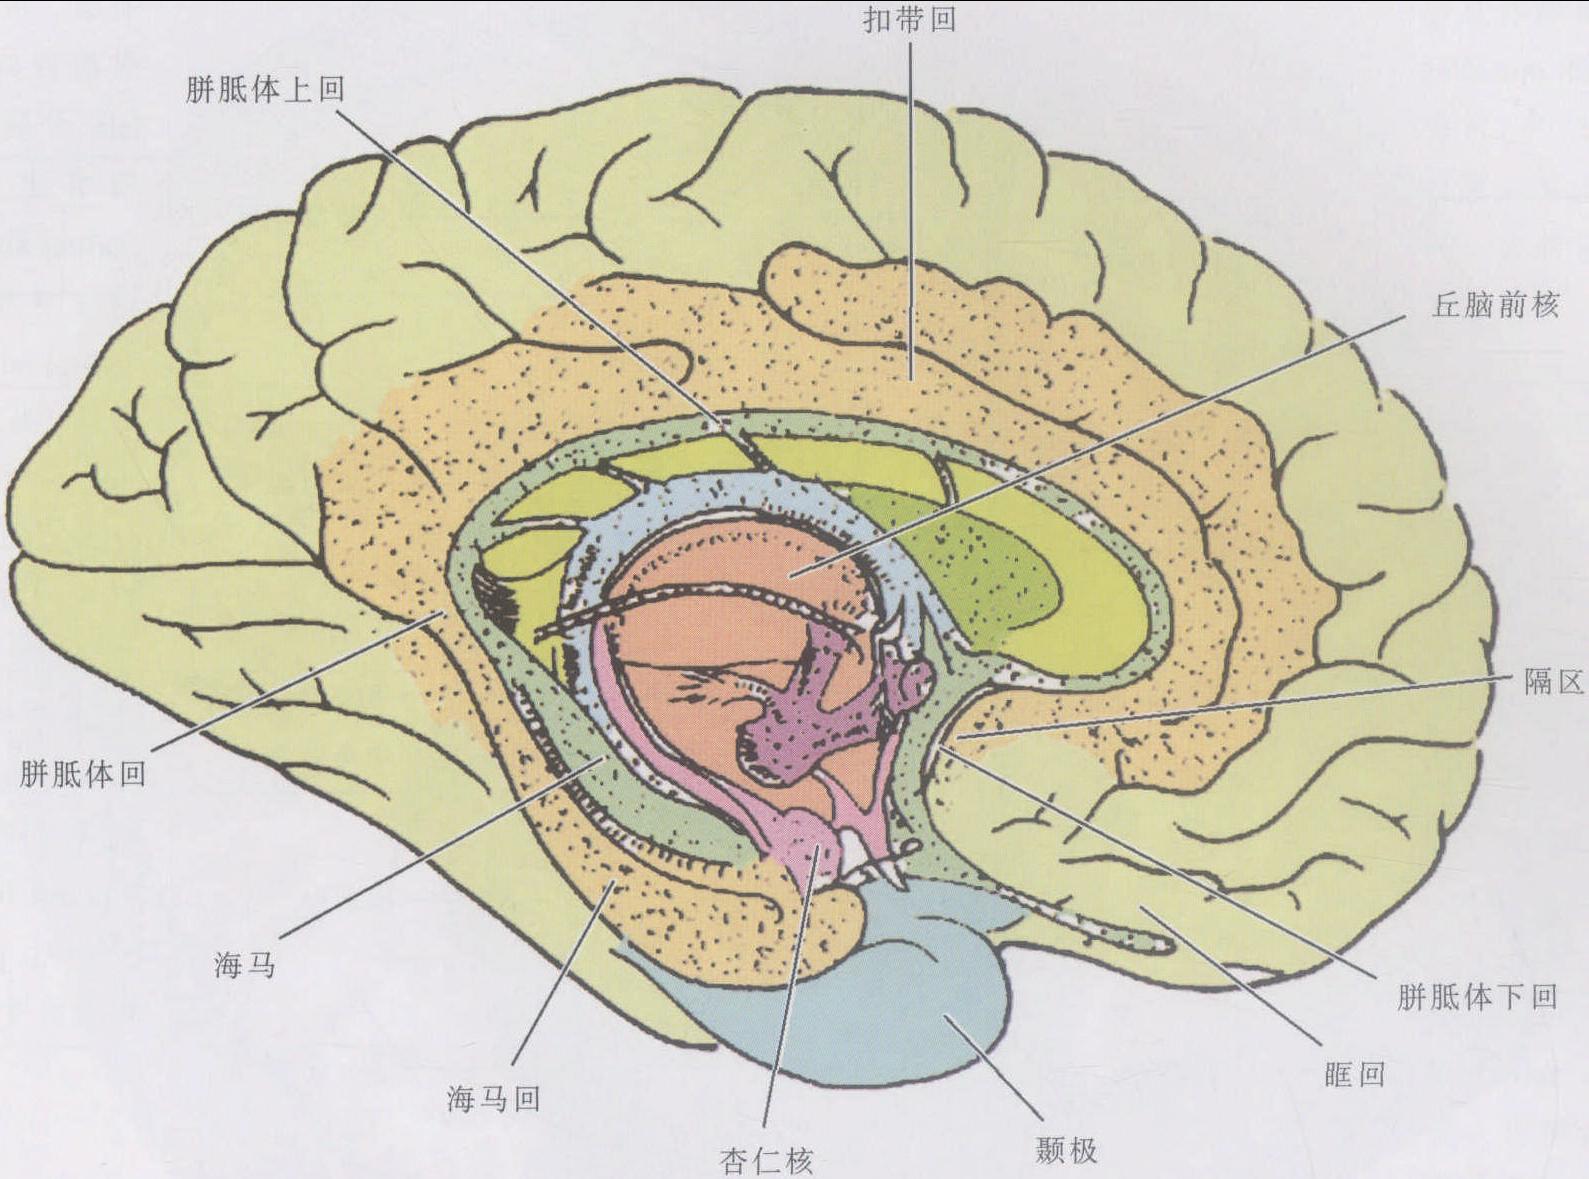 图5-1-65 大脑内侧面(示边缘系统)